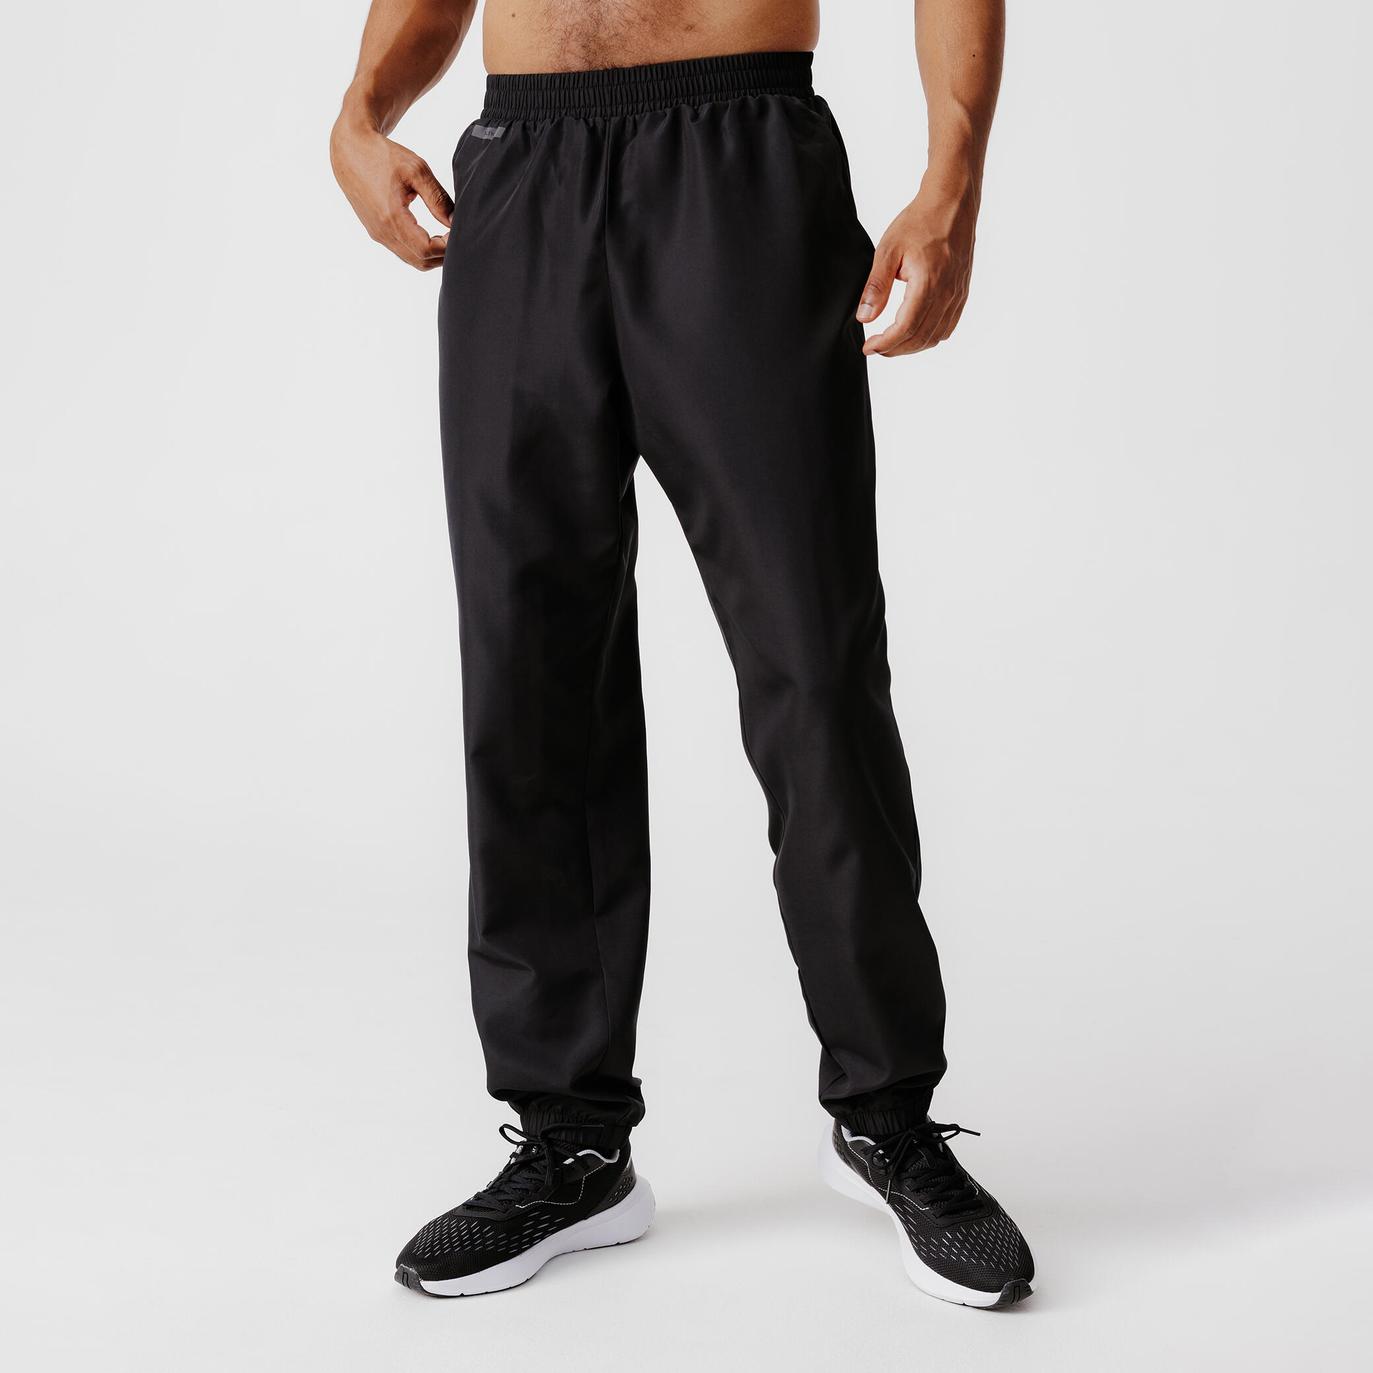 Pantalon running respirant homme - Dry 100 Noir offre à 119 Dh sur Decathlon